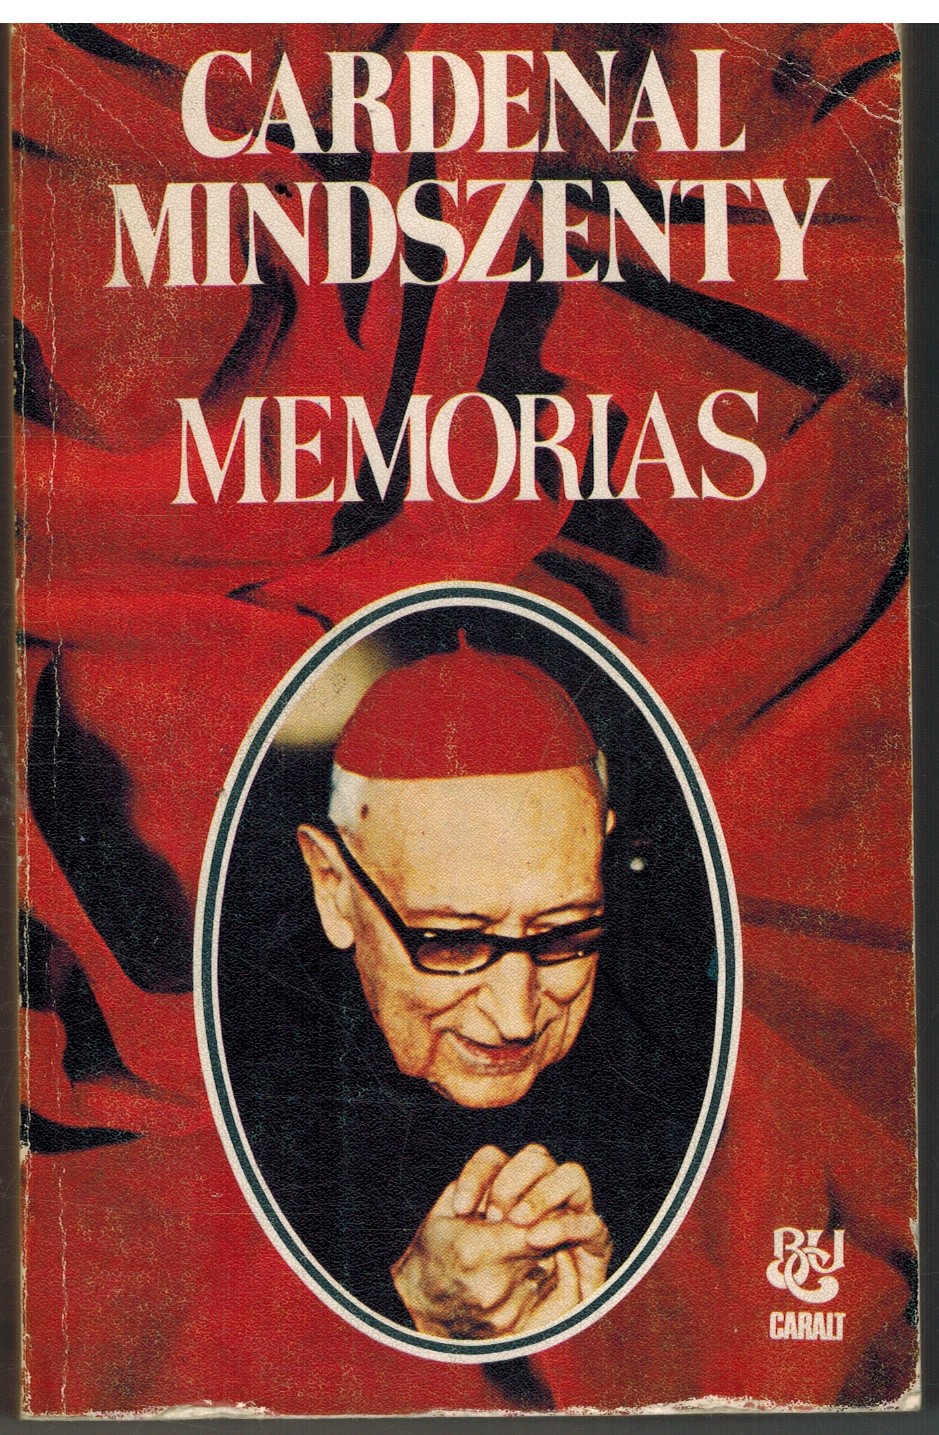 MEMORIAS - CARDENAL MINDSZENTY